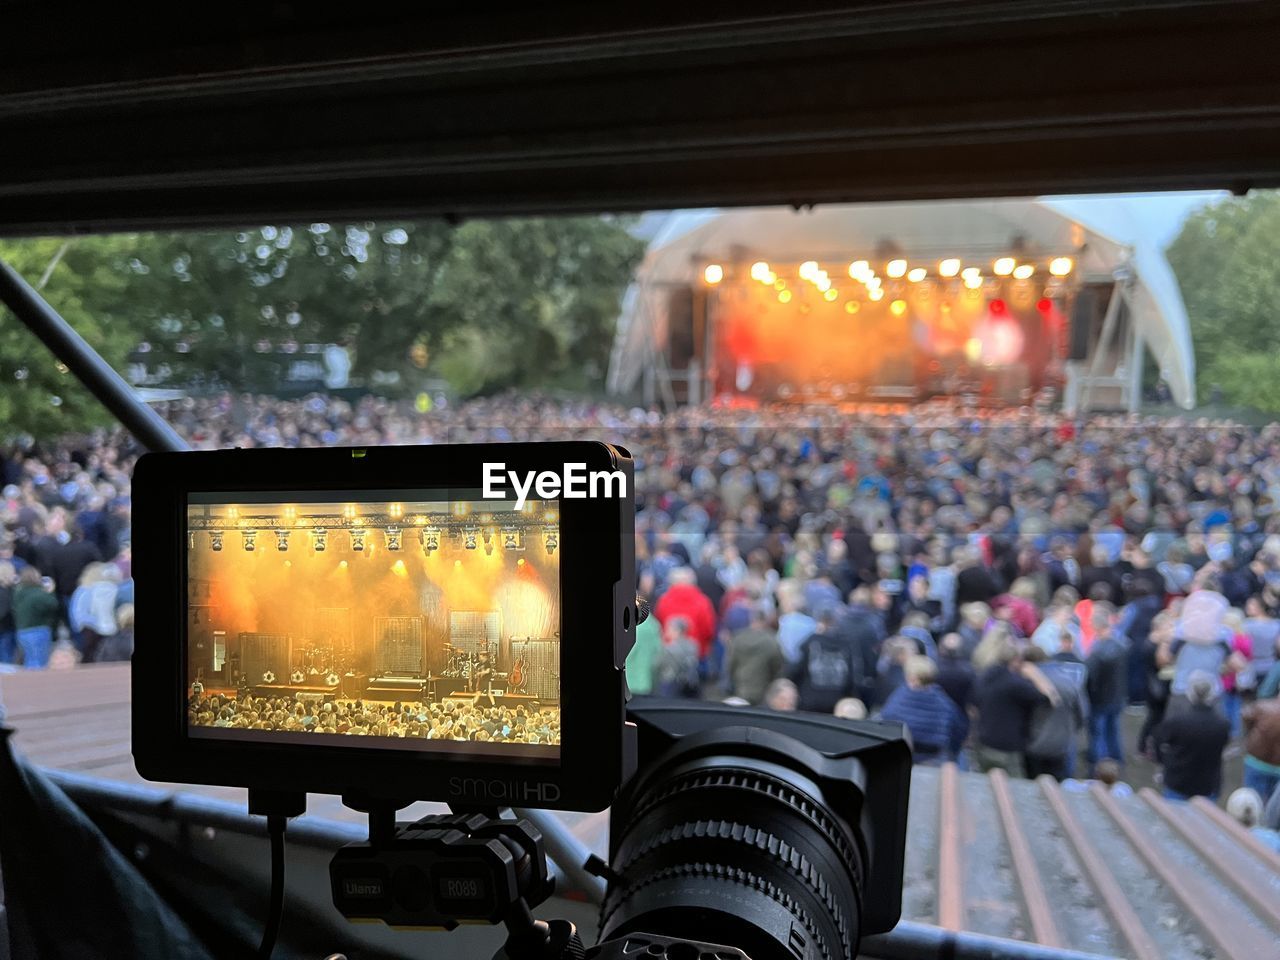 Blick von foh auf bühne bei open air konzert, schärfe auf vordergrund mit kamera monitor.